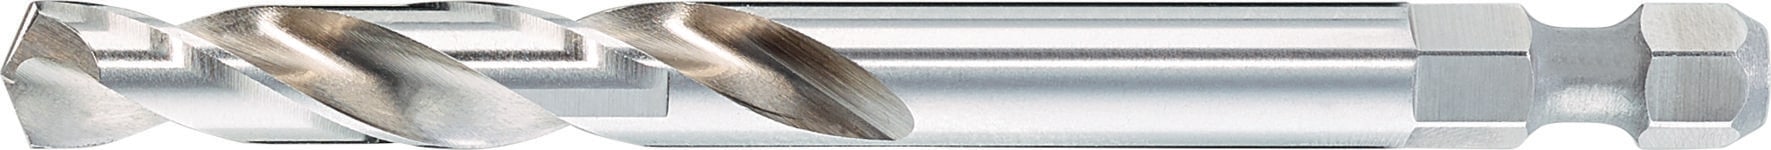 Broca corona bimetálica MultiCut - Brocas para metal y madera - Hilti Chile